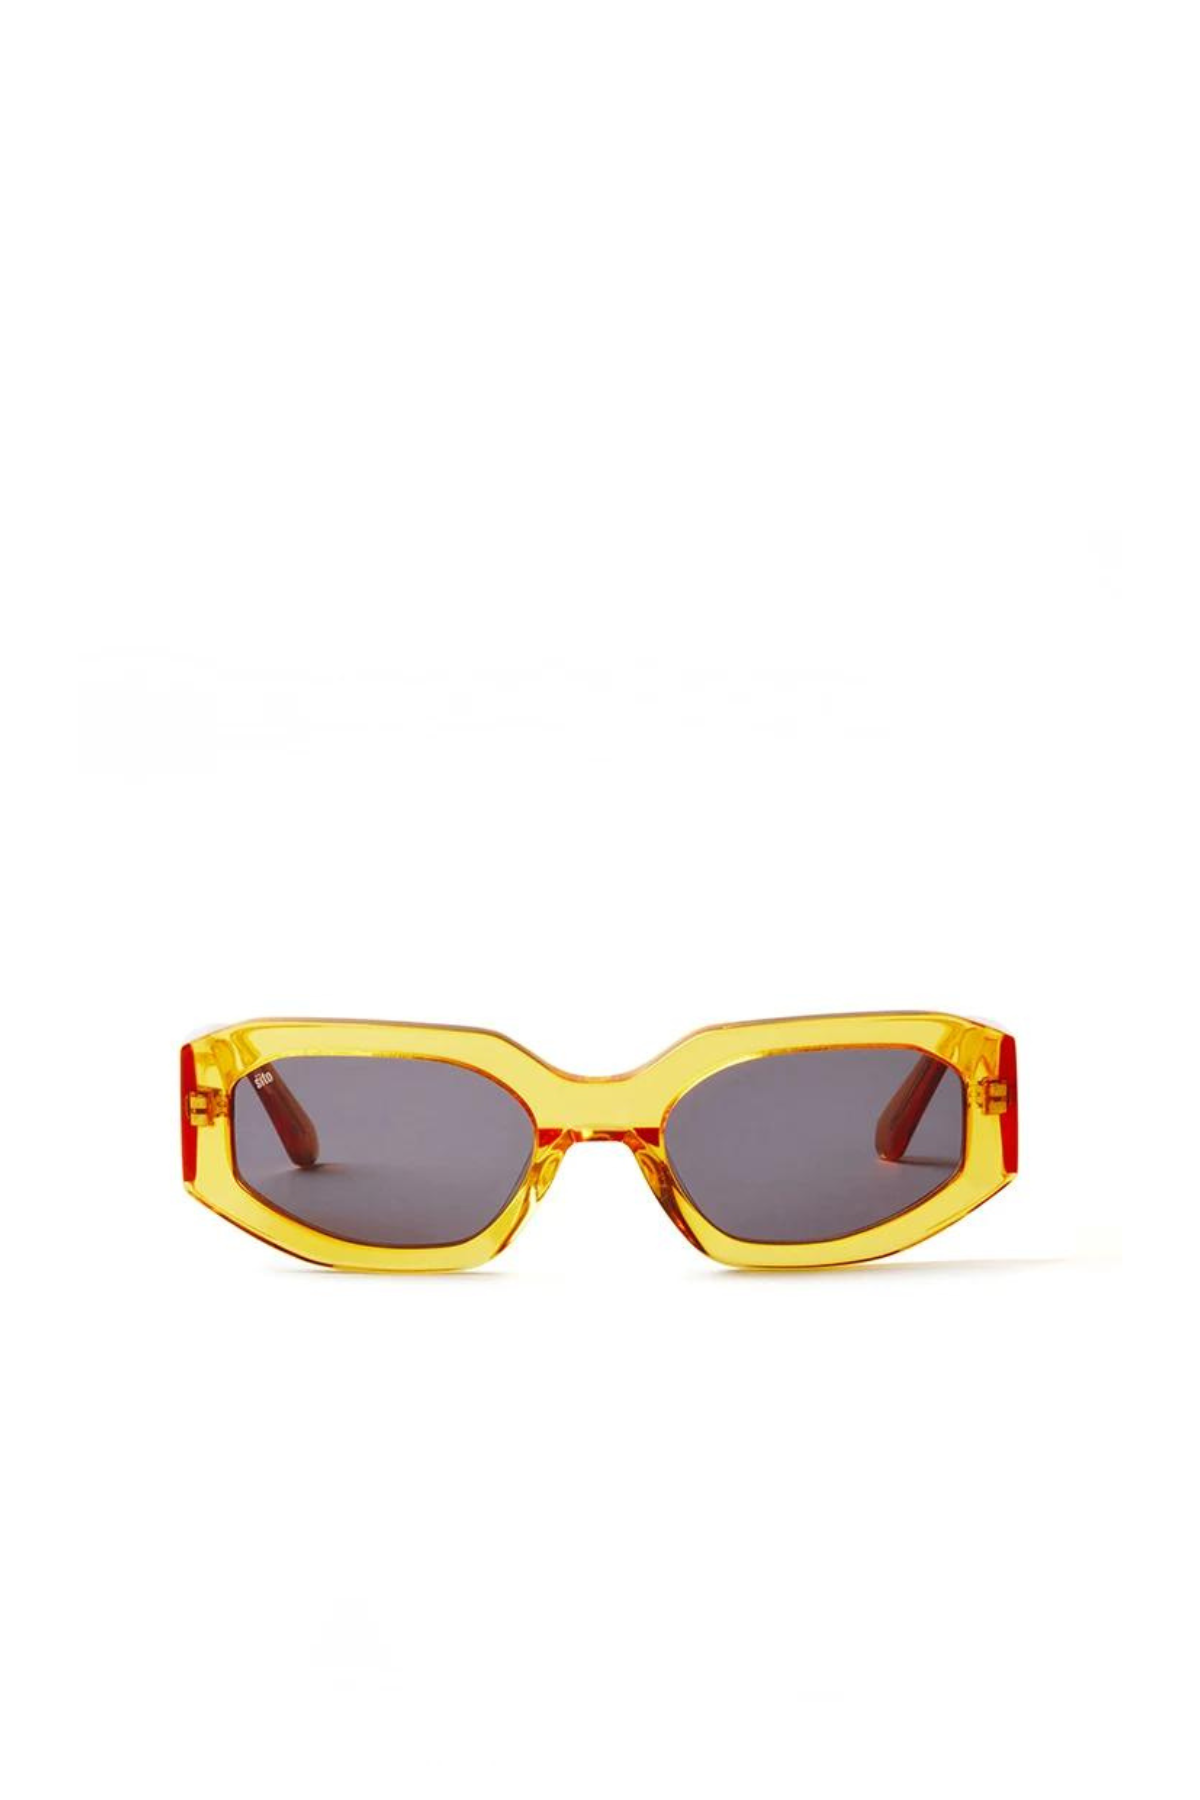 SITO - Juicy Sunglasses